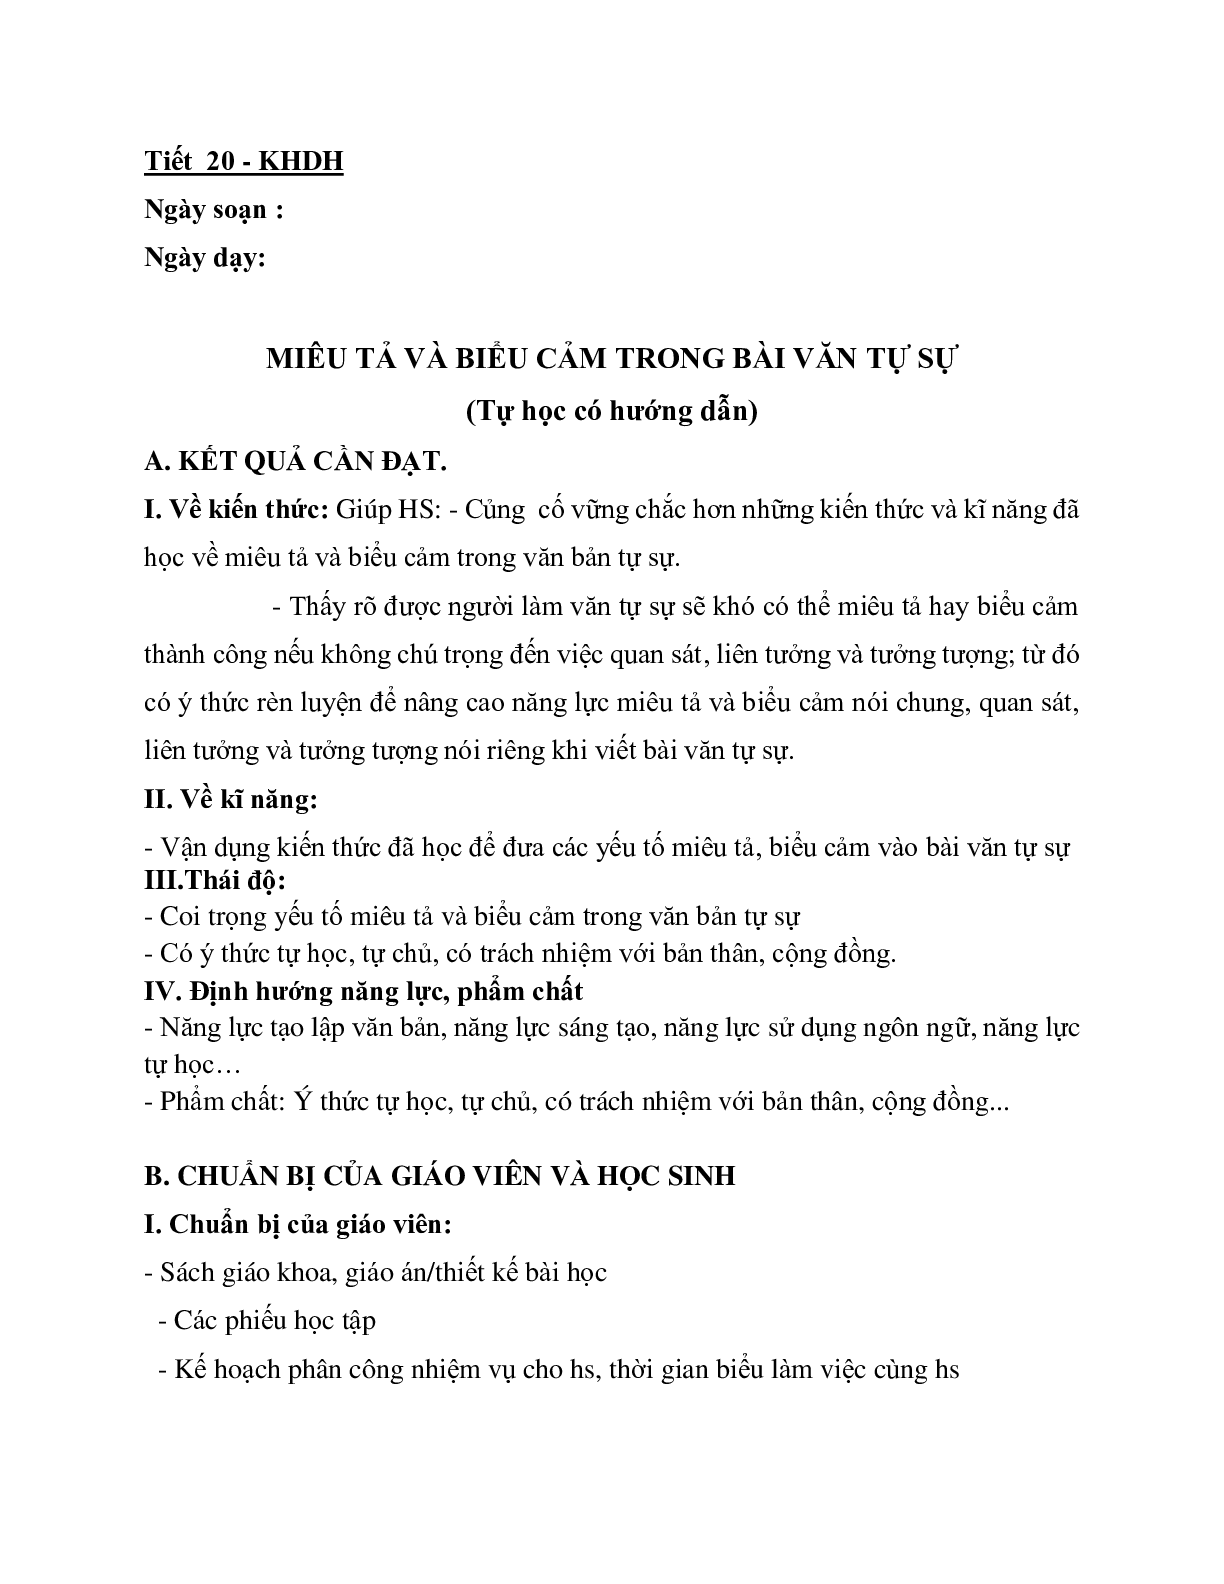 Giáo án ngữ văn lớp 10 Tiết 20: Miêu tả và biểu cản trong bài văn tự sự (trang 1)